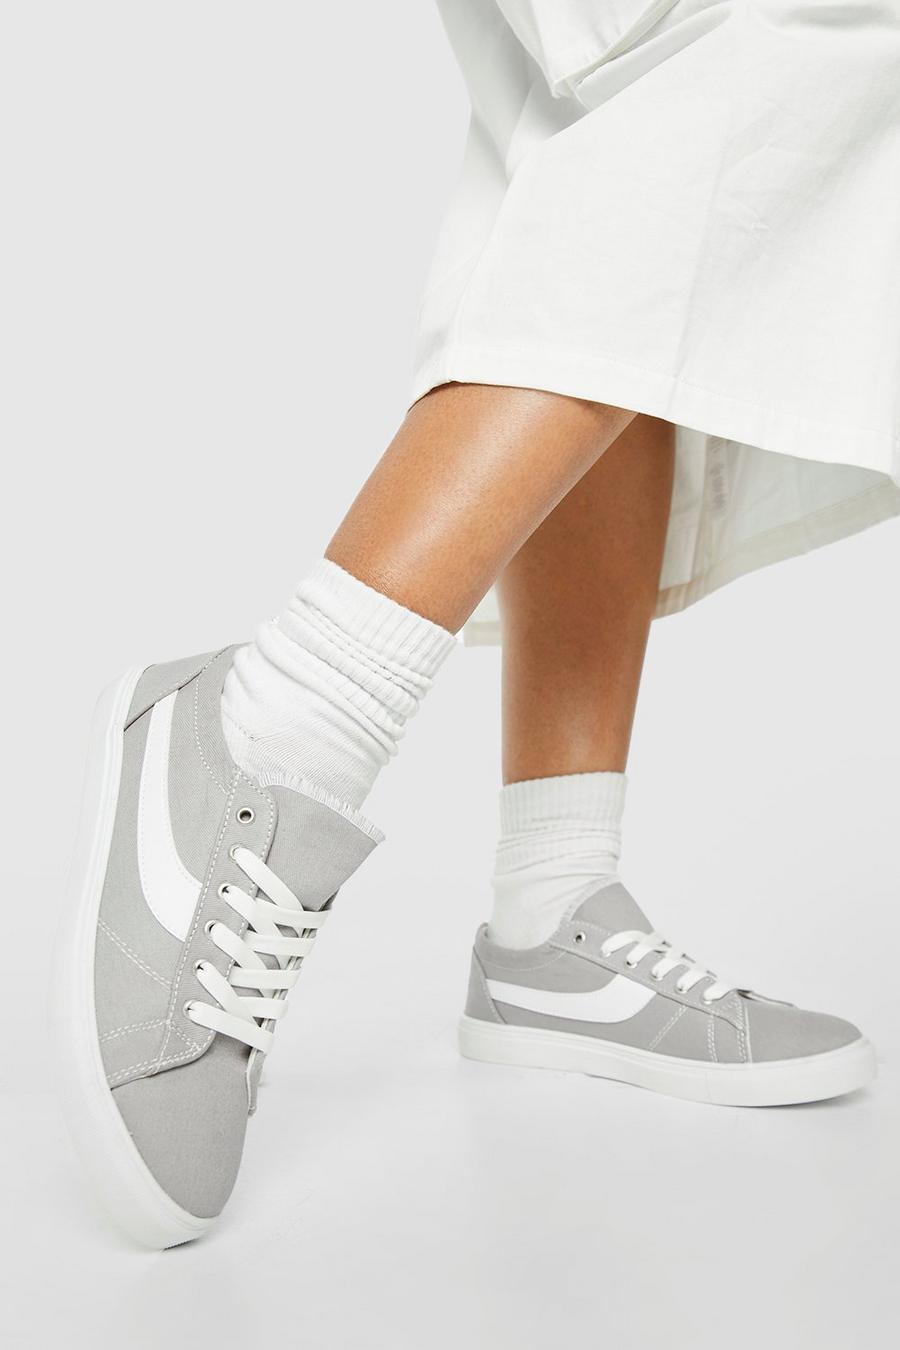 Zapatillas deportivas bajas con paneles, Grey grigio